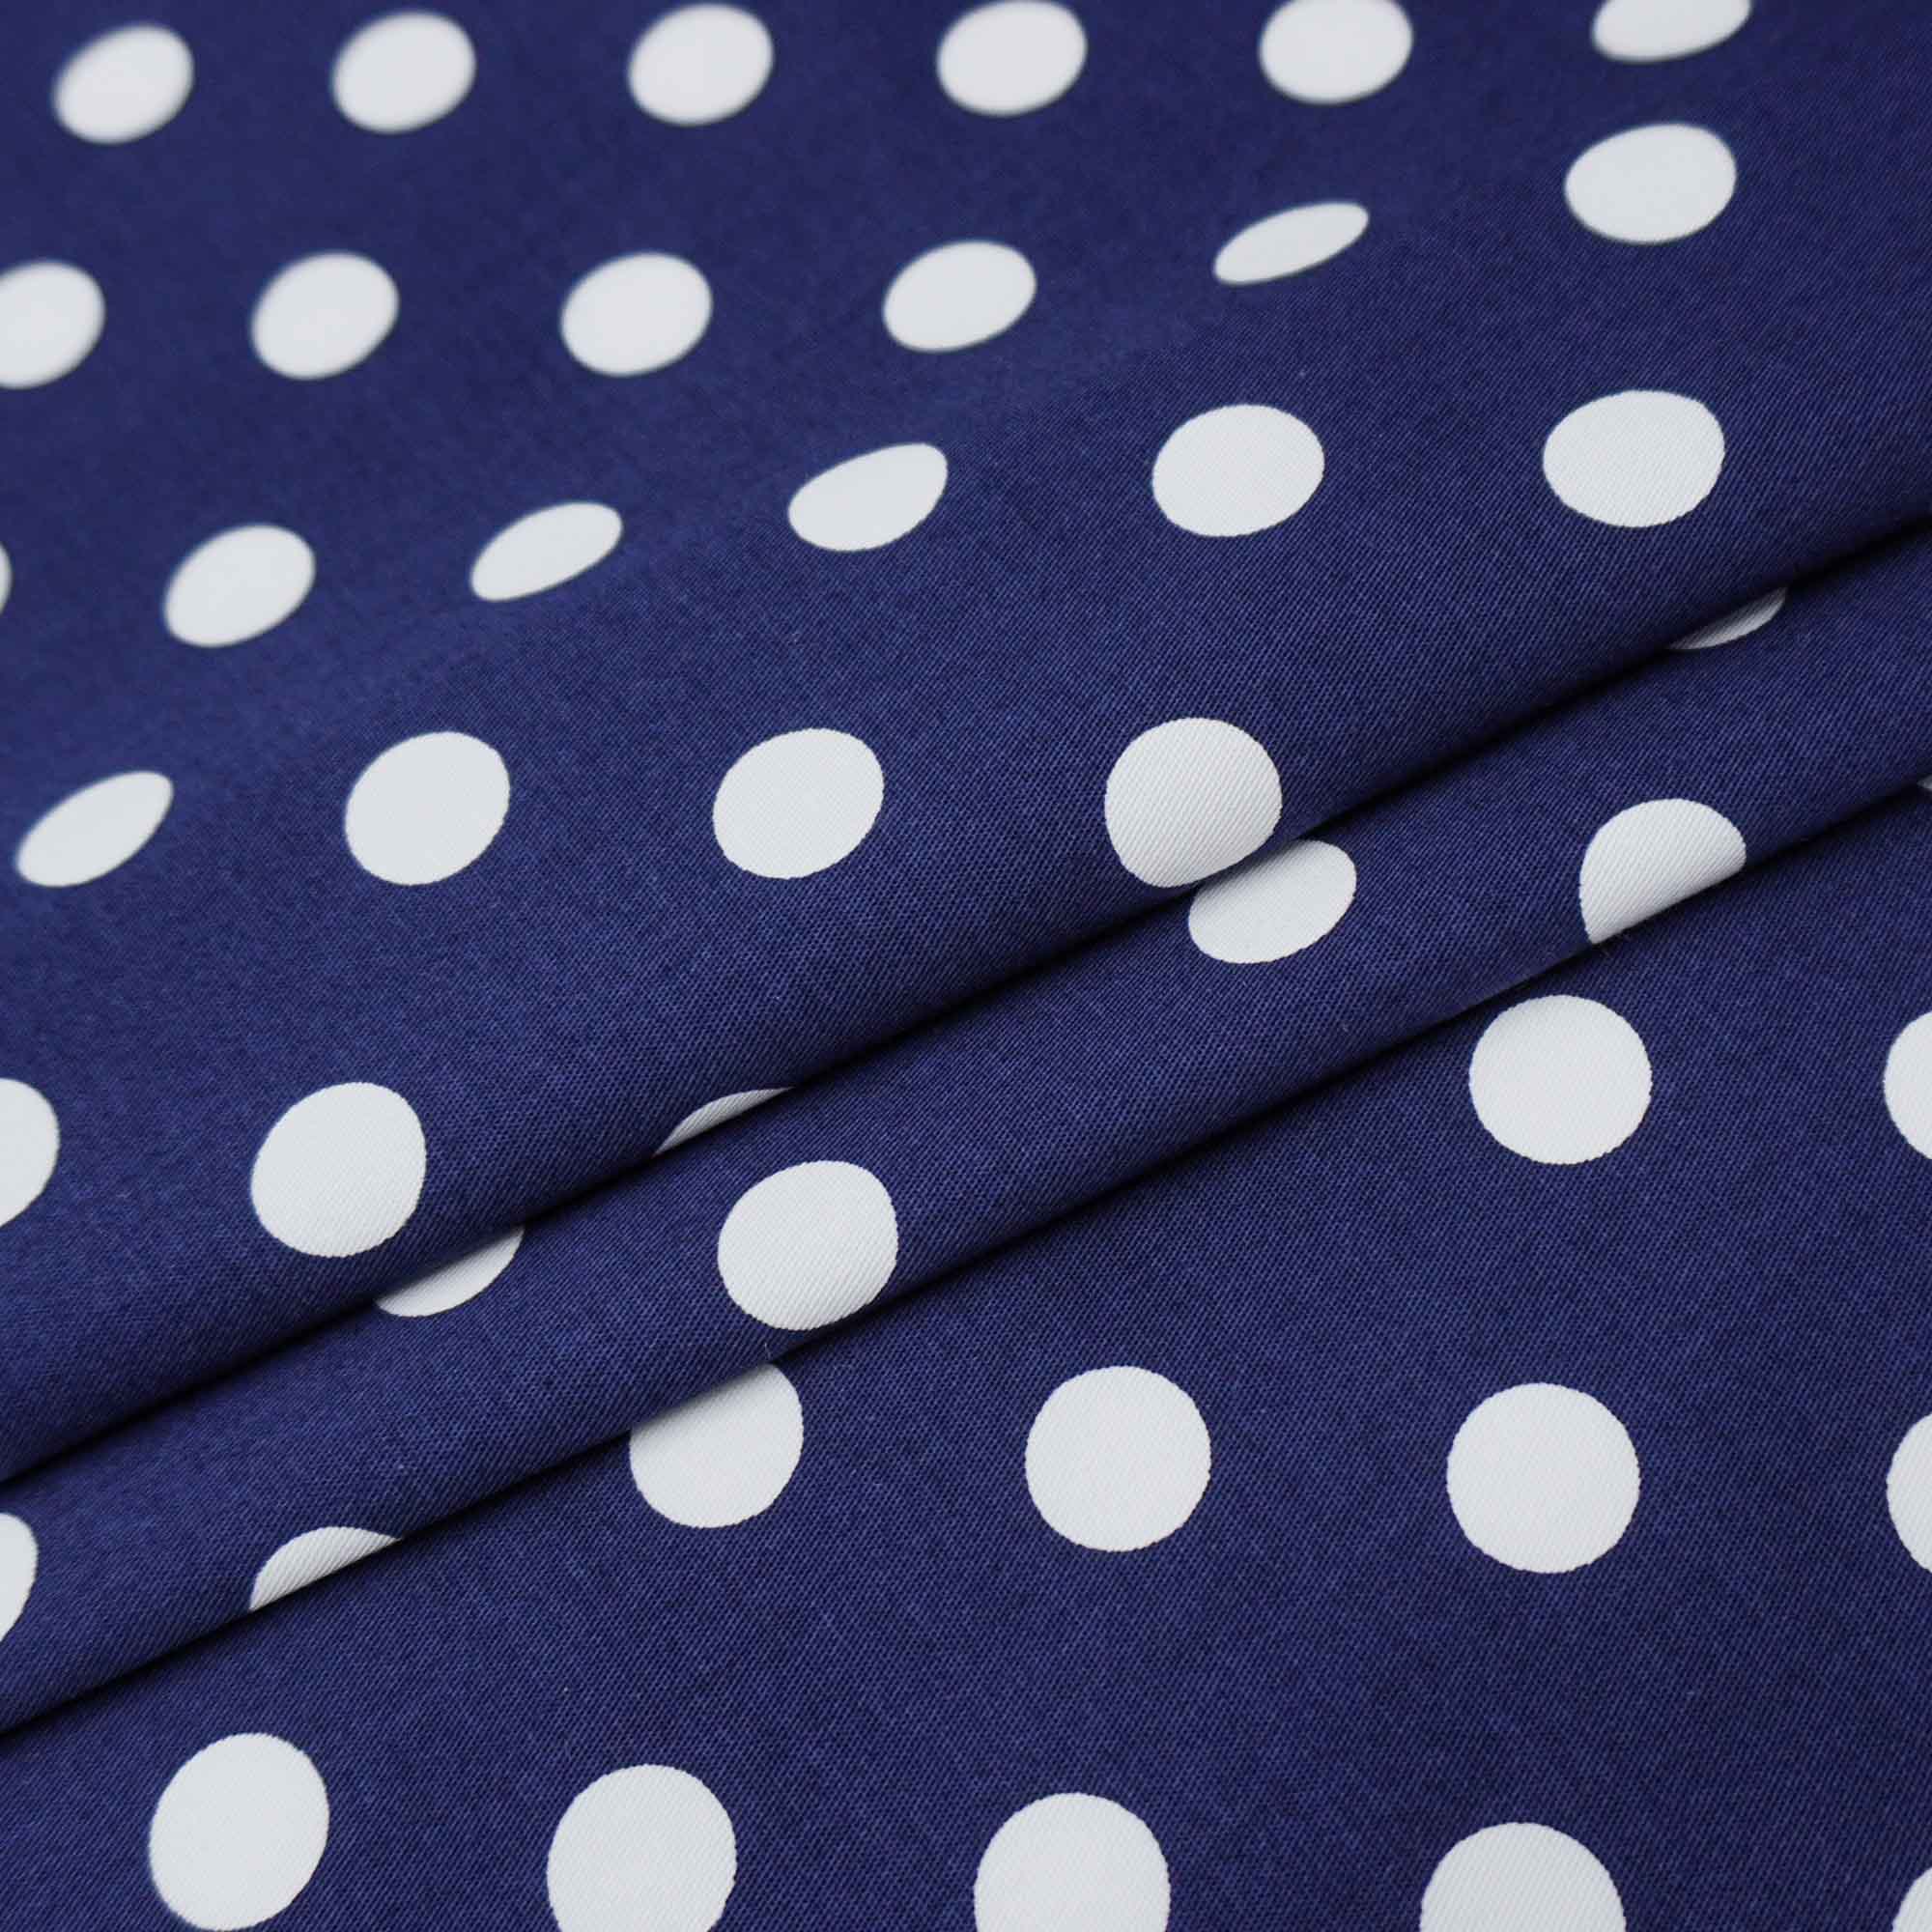 Tecido tricoline com elastano azul marinho/ poa branco (tecido italiano legítimo)